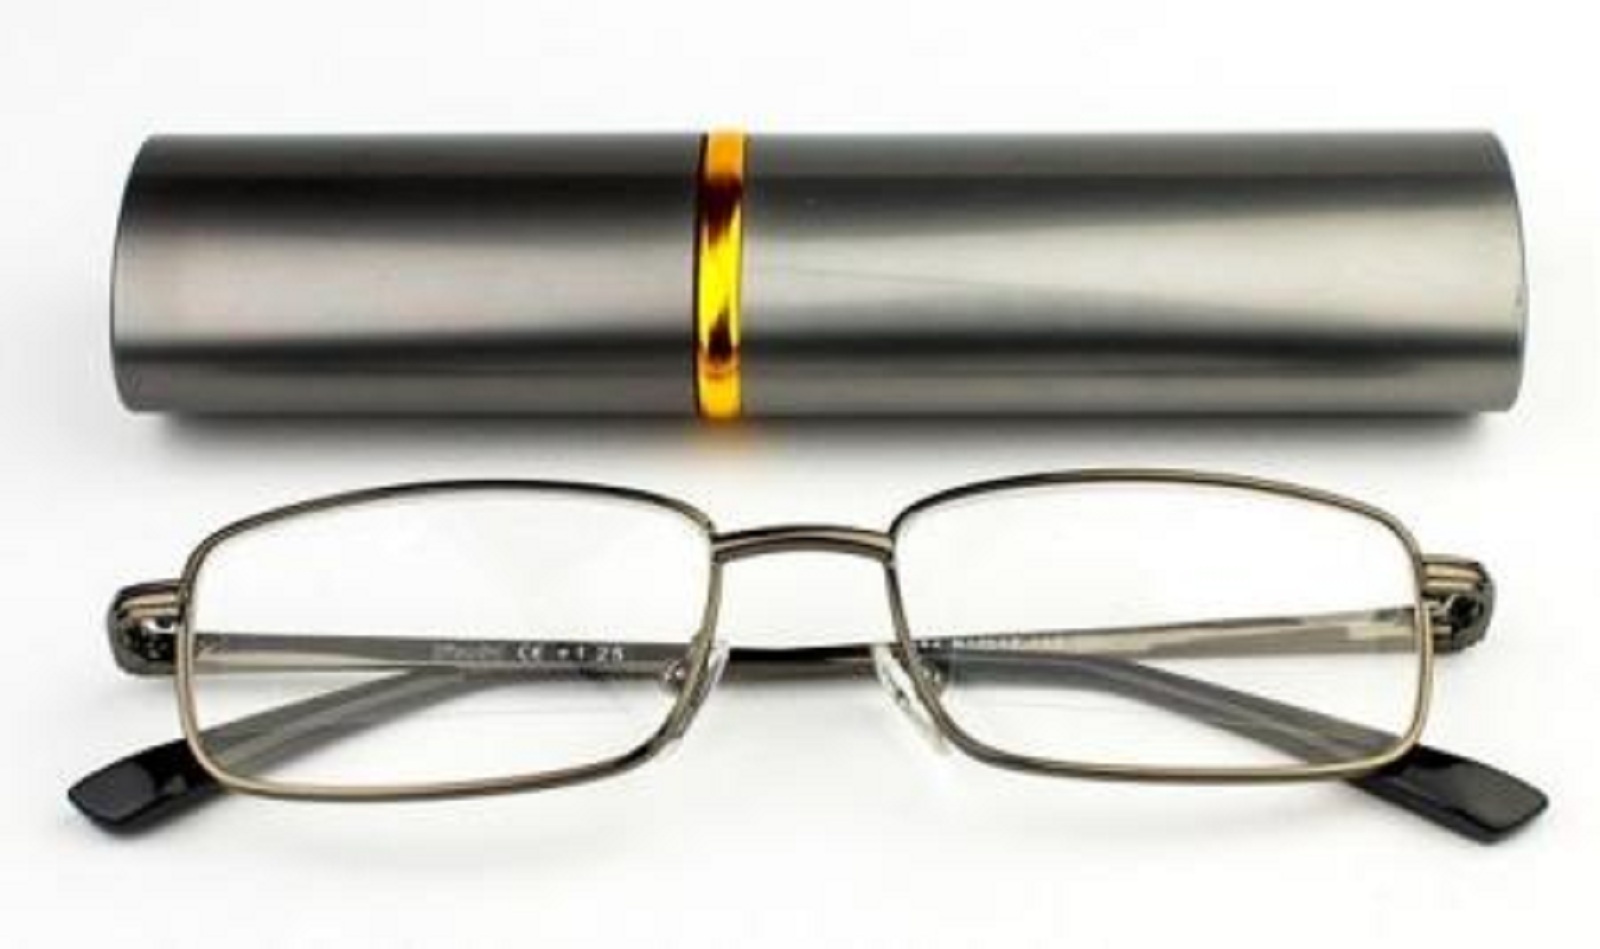 Готовые недорогие очки купить. Очки для чтения Vizzini. Очки для чтения READLNG Glasses РЦ 62-64 +2,5. Очки для чтения Vizzini 1. Очки для чтения в футляре 199р.